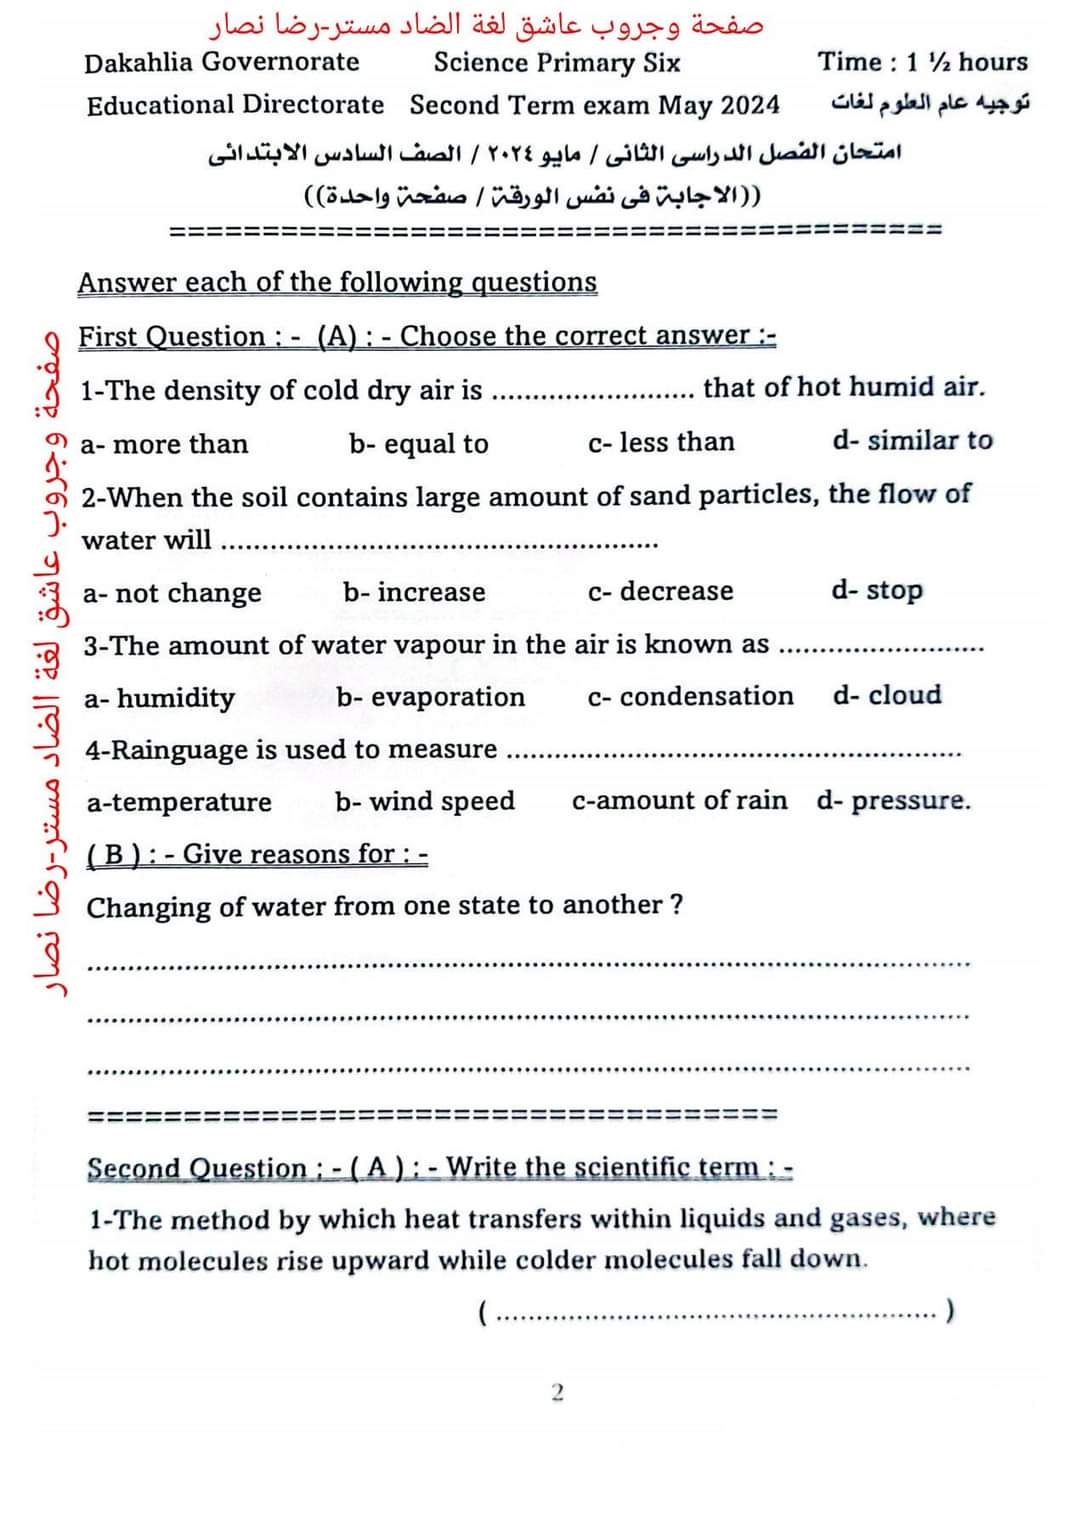 مراجعة التوجيه في الساينس الصف السادس الابتدائي لغات الترم الثاني بالاجابات